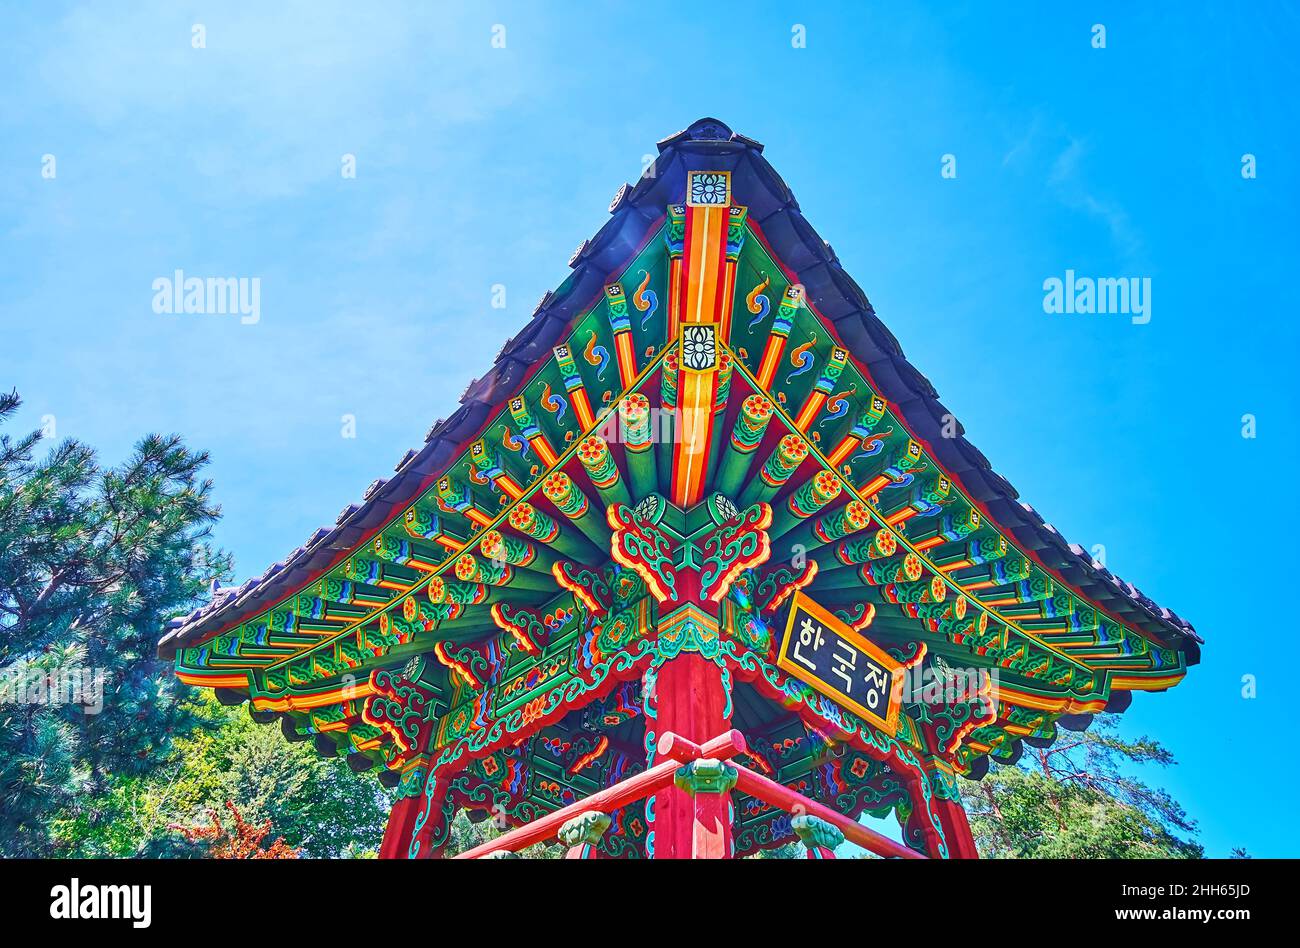 Le coin coloré du toit de la pagode coréenne, décoré avec des ornements sculptés et peints, situé dans le jardin traditionnel coréen, Kyiv Botanical GA Banque D'Images